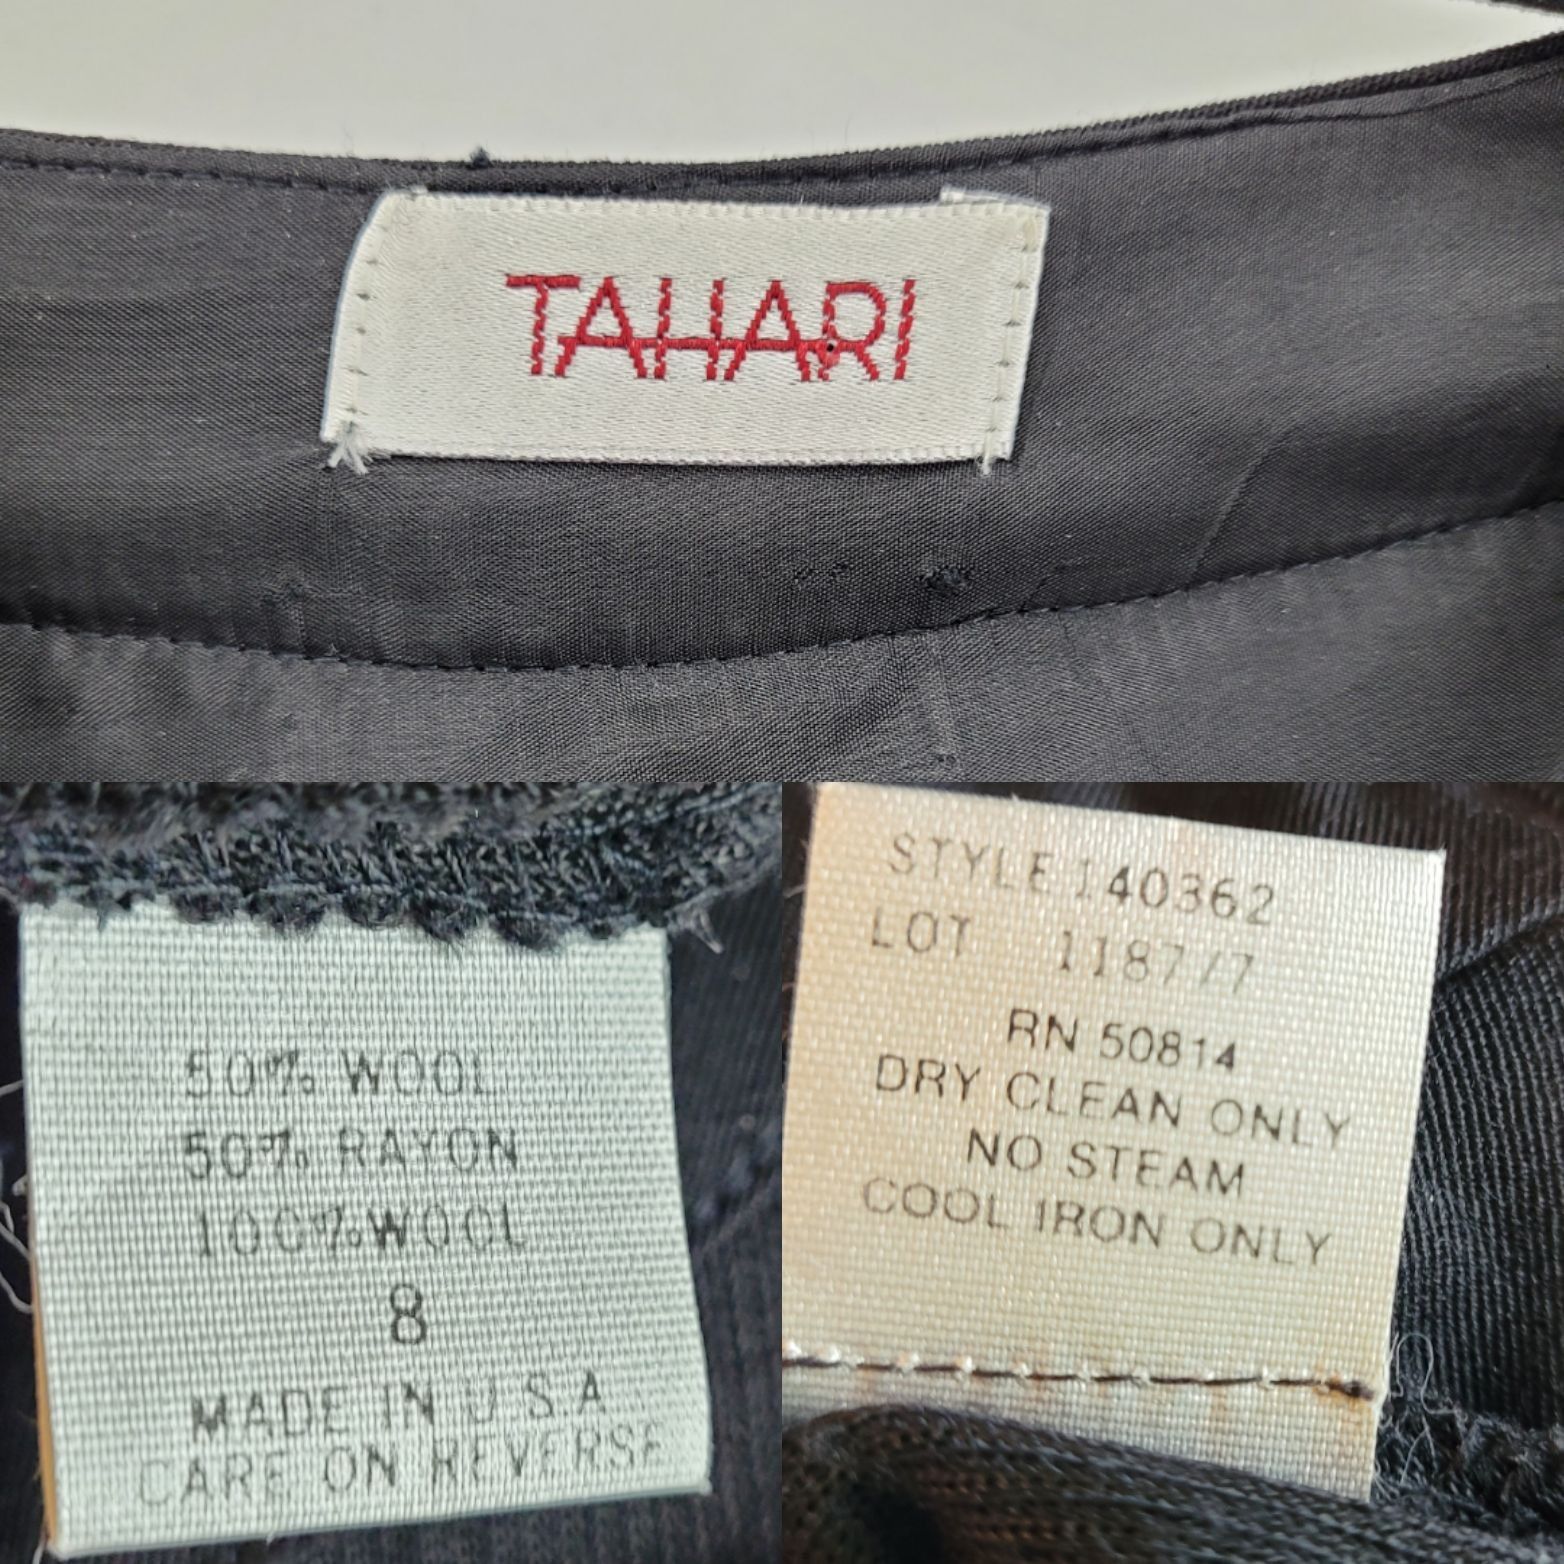 Elie Tahari 80s Tahari Dress Wool Knit Modest Long Sleeve Maxi Black Size M / US 6-8 / IT 42-44 - 3 Thumbnail